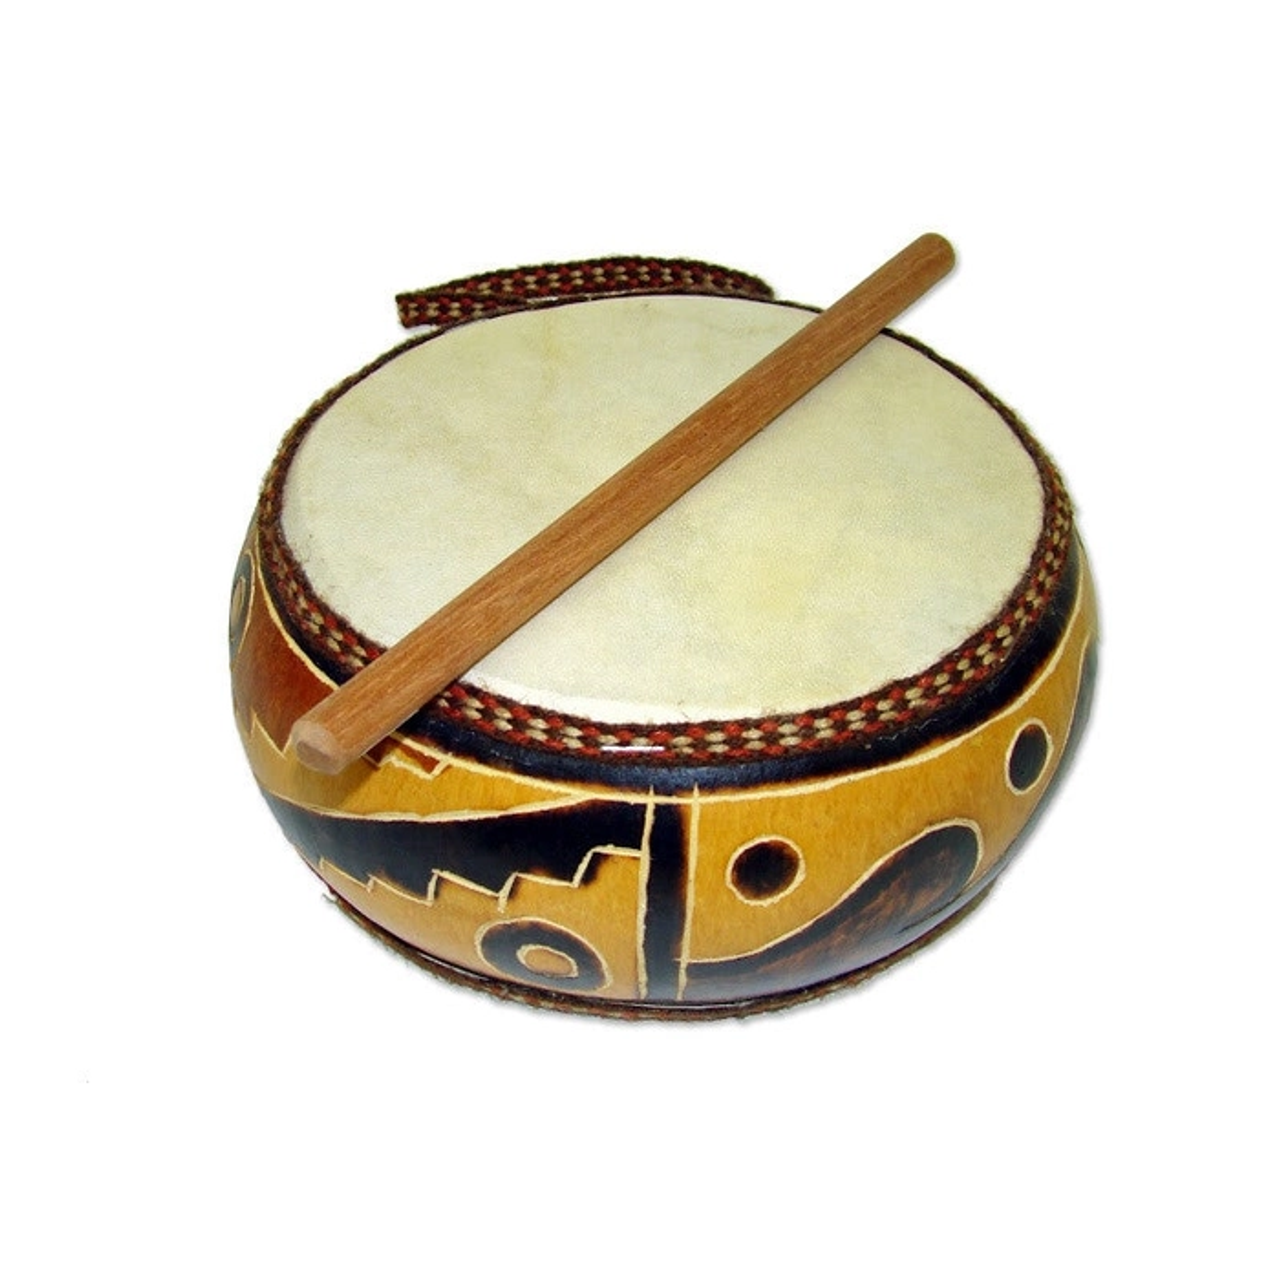 Музыкальный инструмент казань. Чиндаул музыкальный инструмент. Узбекские национальные инструменты. Якутские музыкальные инструменты. Уйгурские музыкальные инструменты.